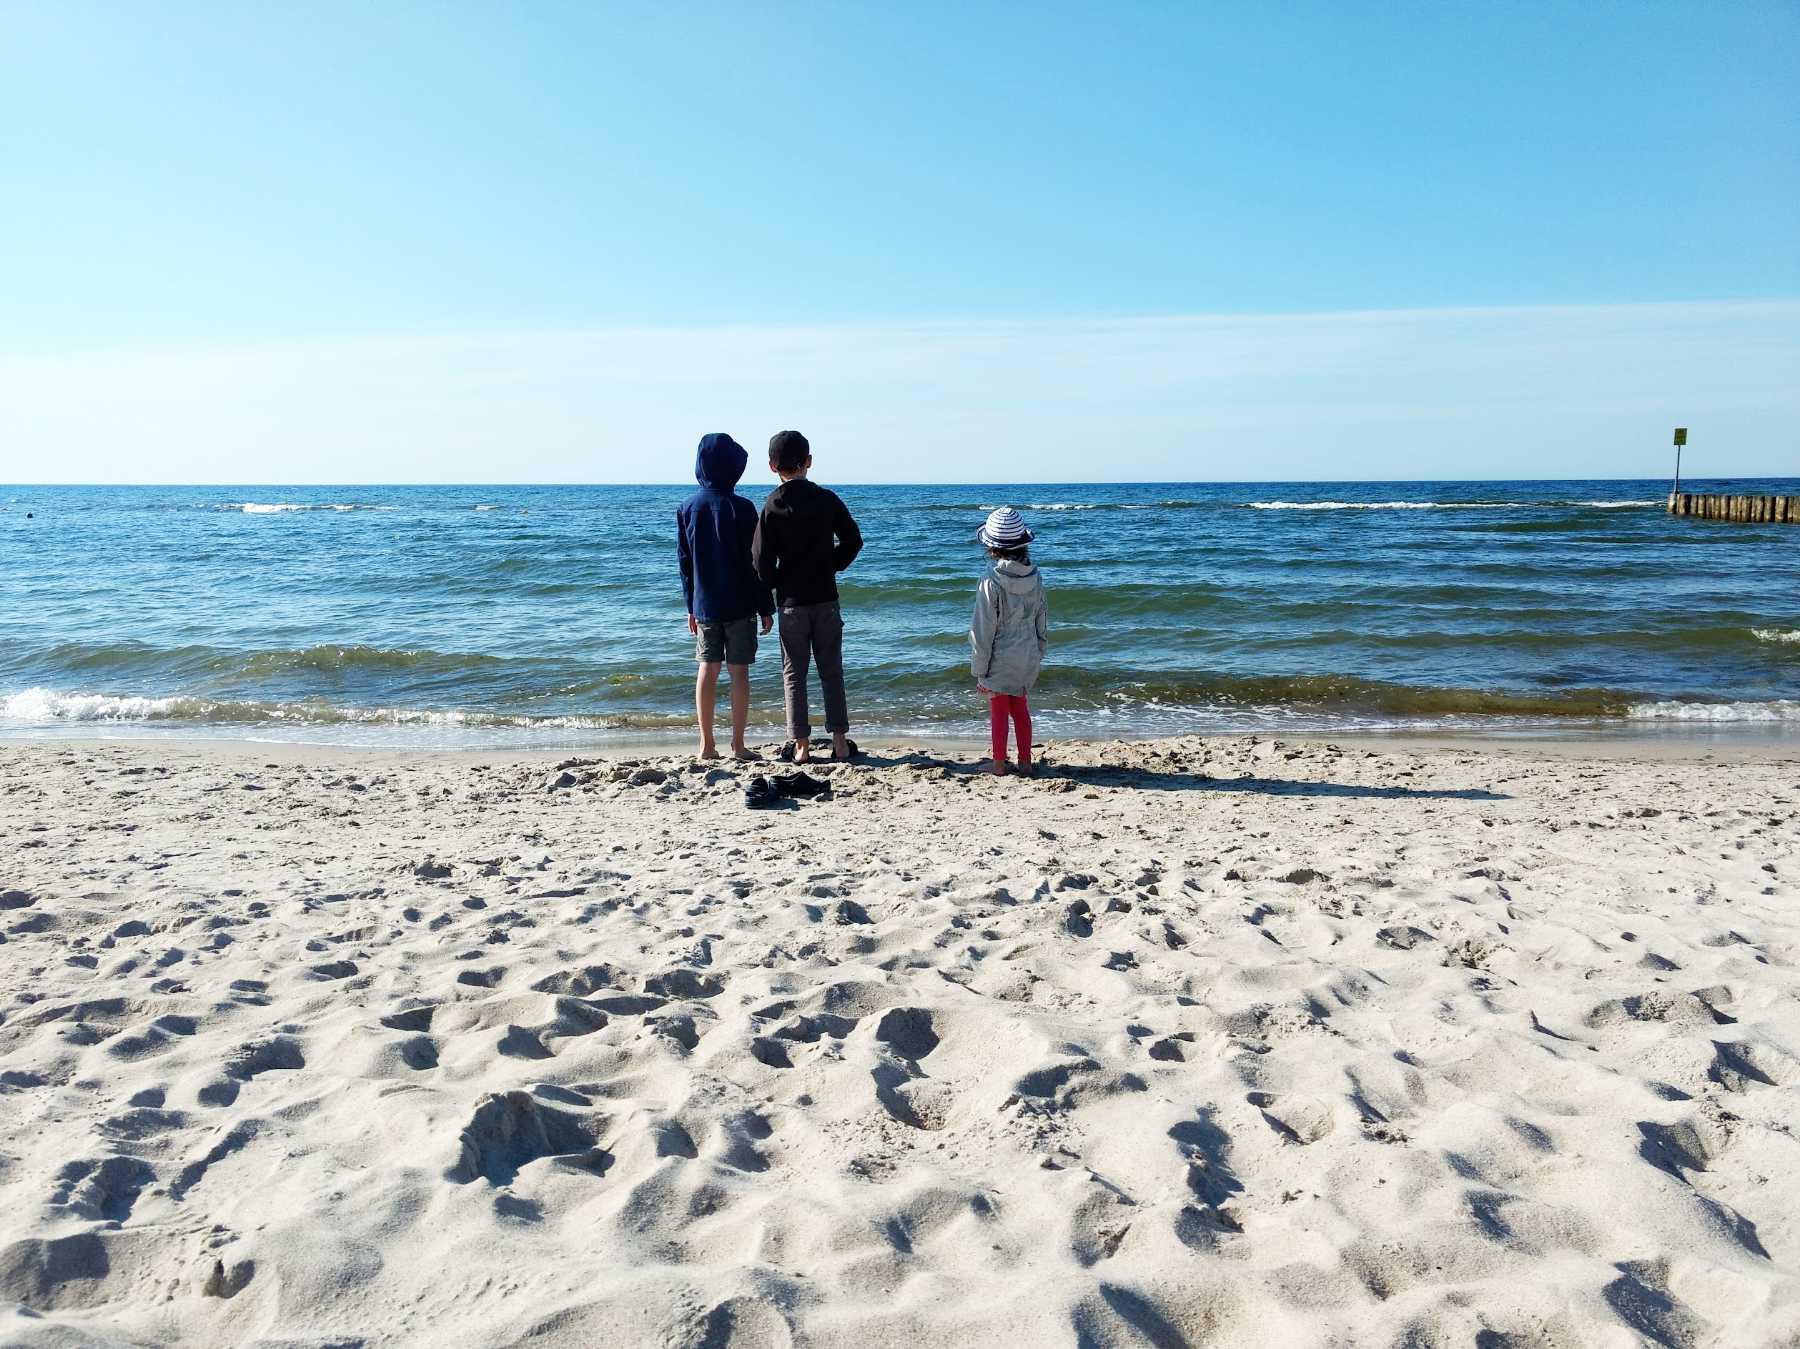 Kinder am Strand bei Kolberg, aufs Meer blickend bei blauem Himmel. Foto: Kolberg-Café